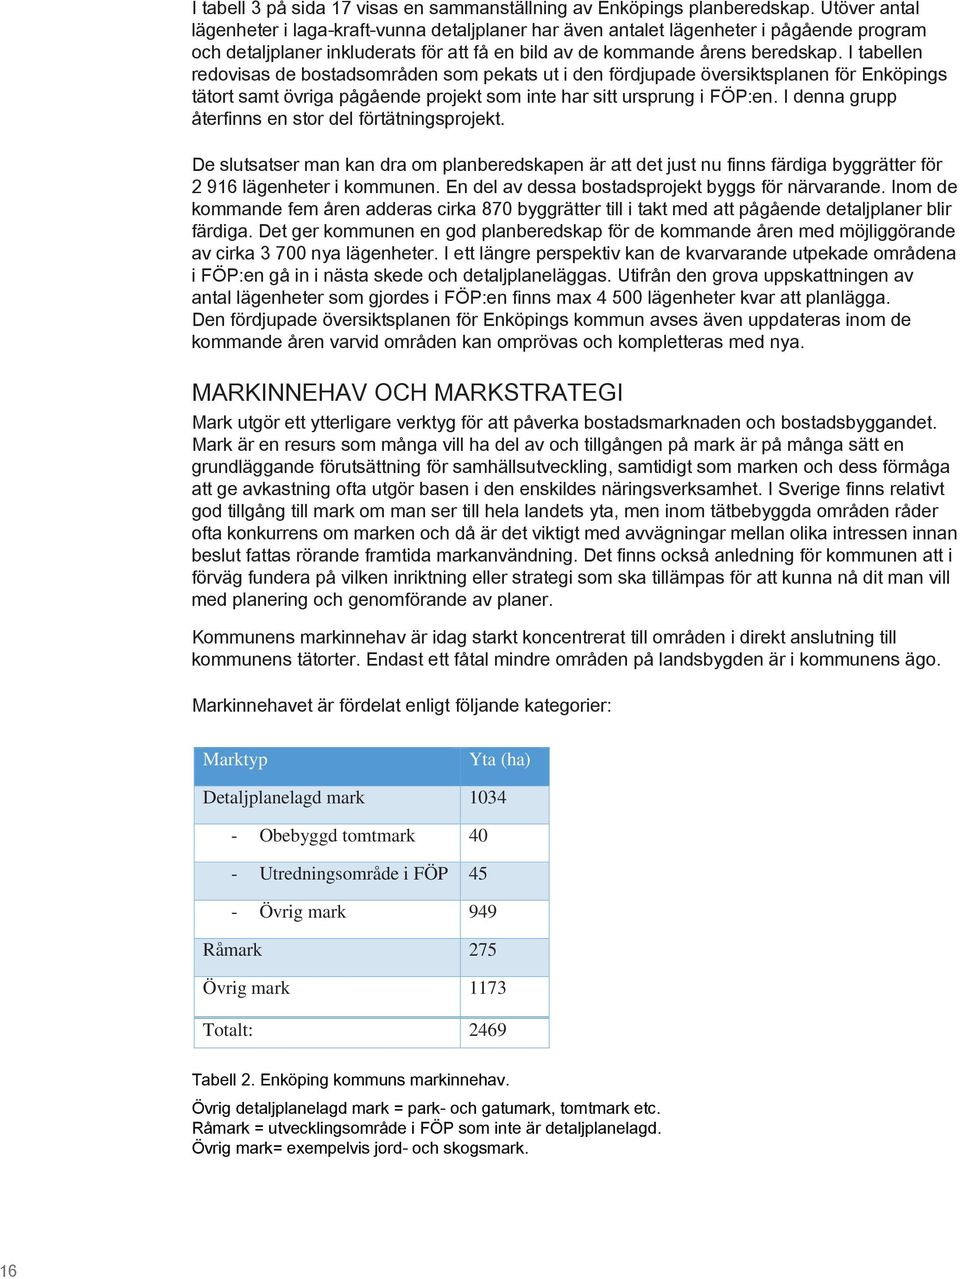 I tabellen redovisas de bostadsområden som pekats ut i den fördjupade översiktsplanen för Enköpings tätort samt övriga pågående projekt som inte har sitt ursprung i FÖP:en.